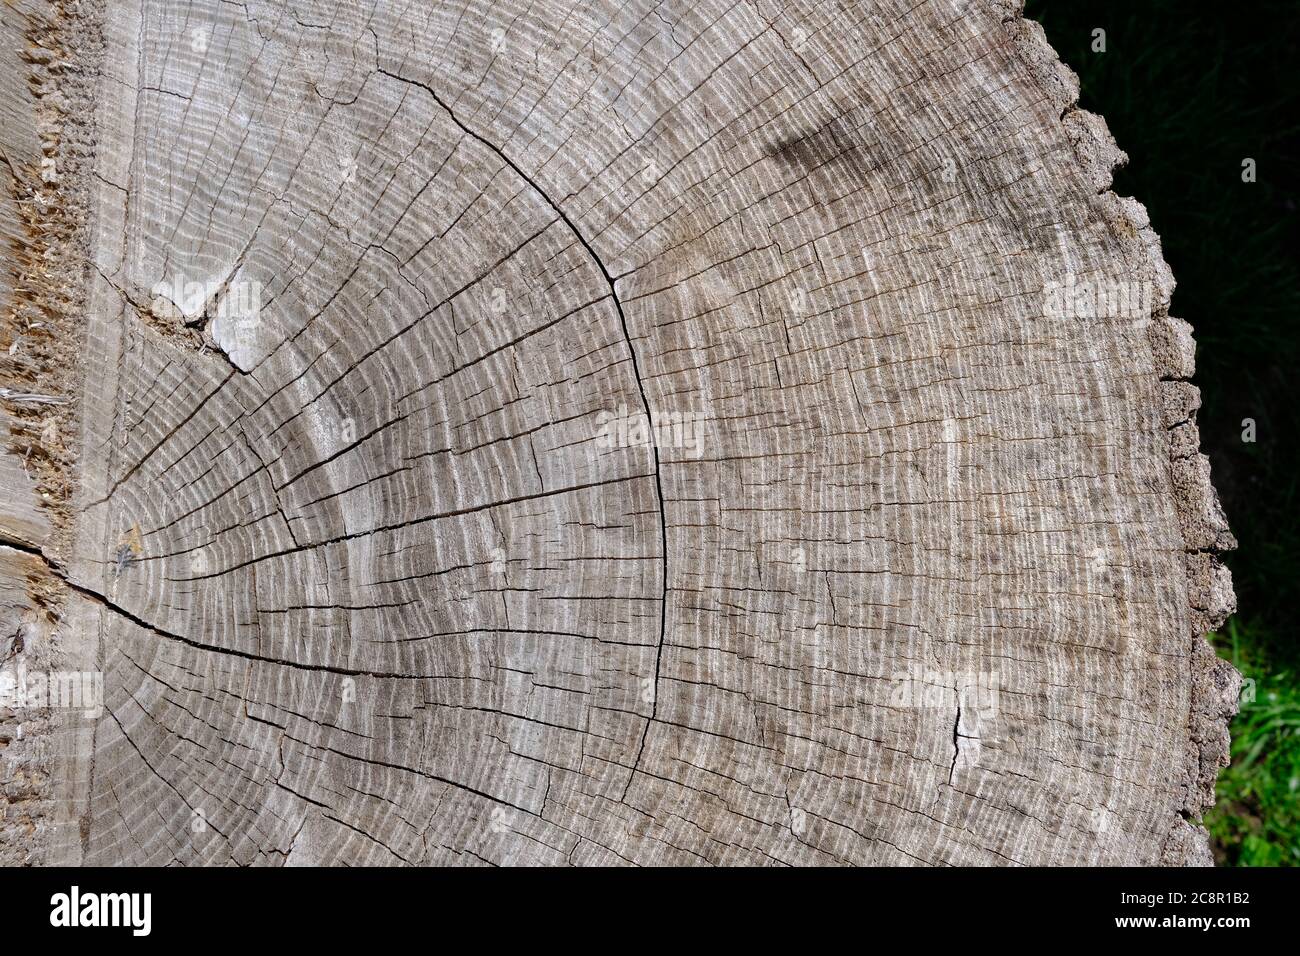 Holzstruktur. Großer Baumstamm mit vielen winzigen Rissen und grau gealterter Farbe. Stumpf zeigt die altersbestimmenden Ringe eines Baumes. Stockfoto